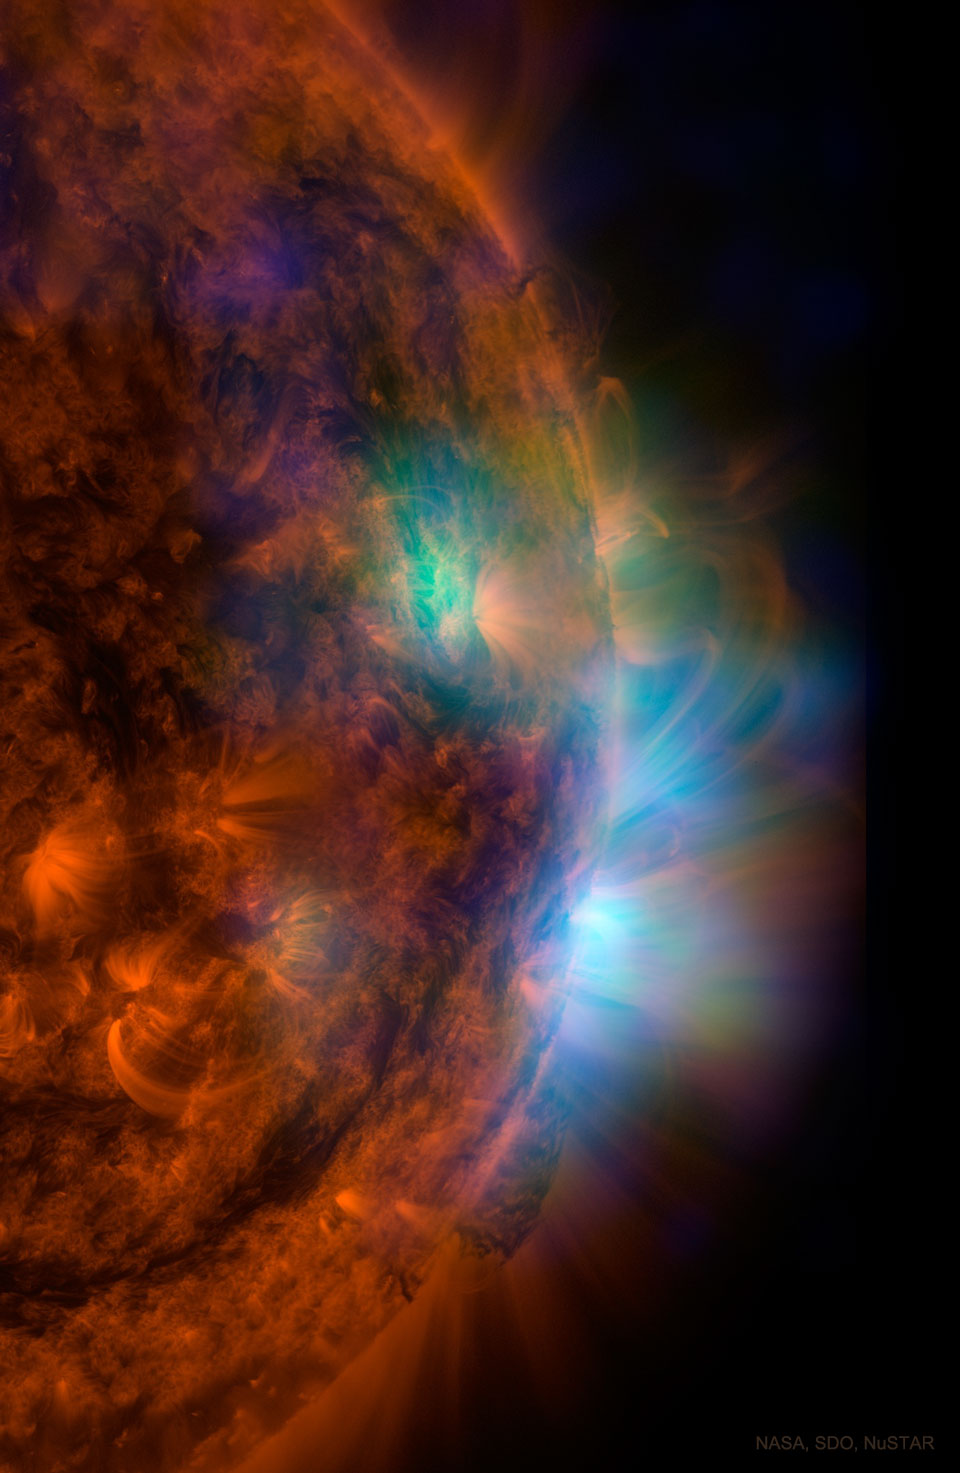 这张特色图像显示了NASA的NuSTAR卫星显示的X射线光下的太阳——叠加在NASA太阳动力天文台拍摄的紫外光下的图像上。有关更多详细信息，请参阅说明。